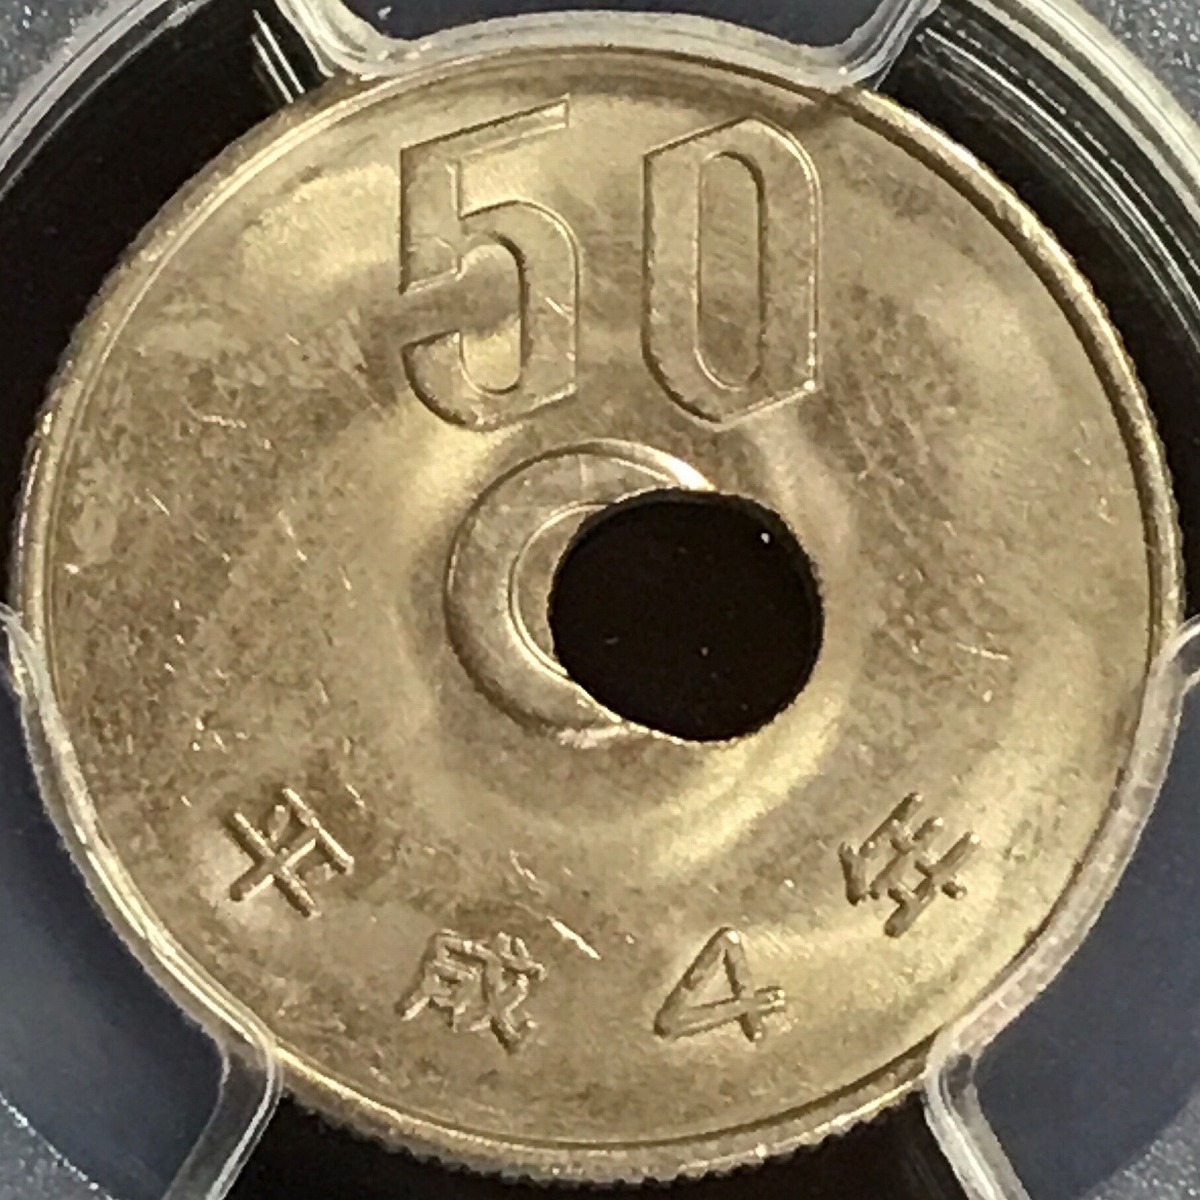 営業 平成19年 50円硬貨 1枚